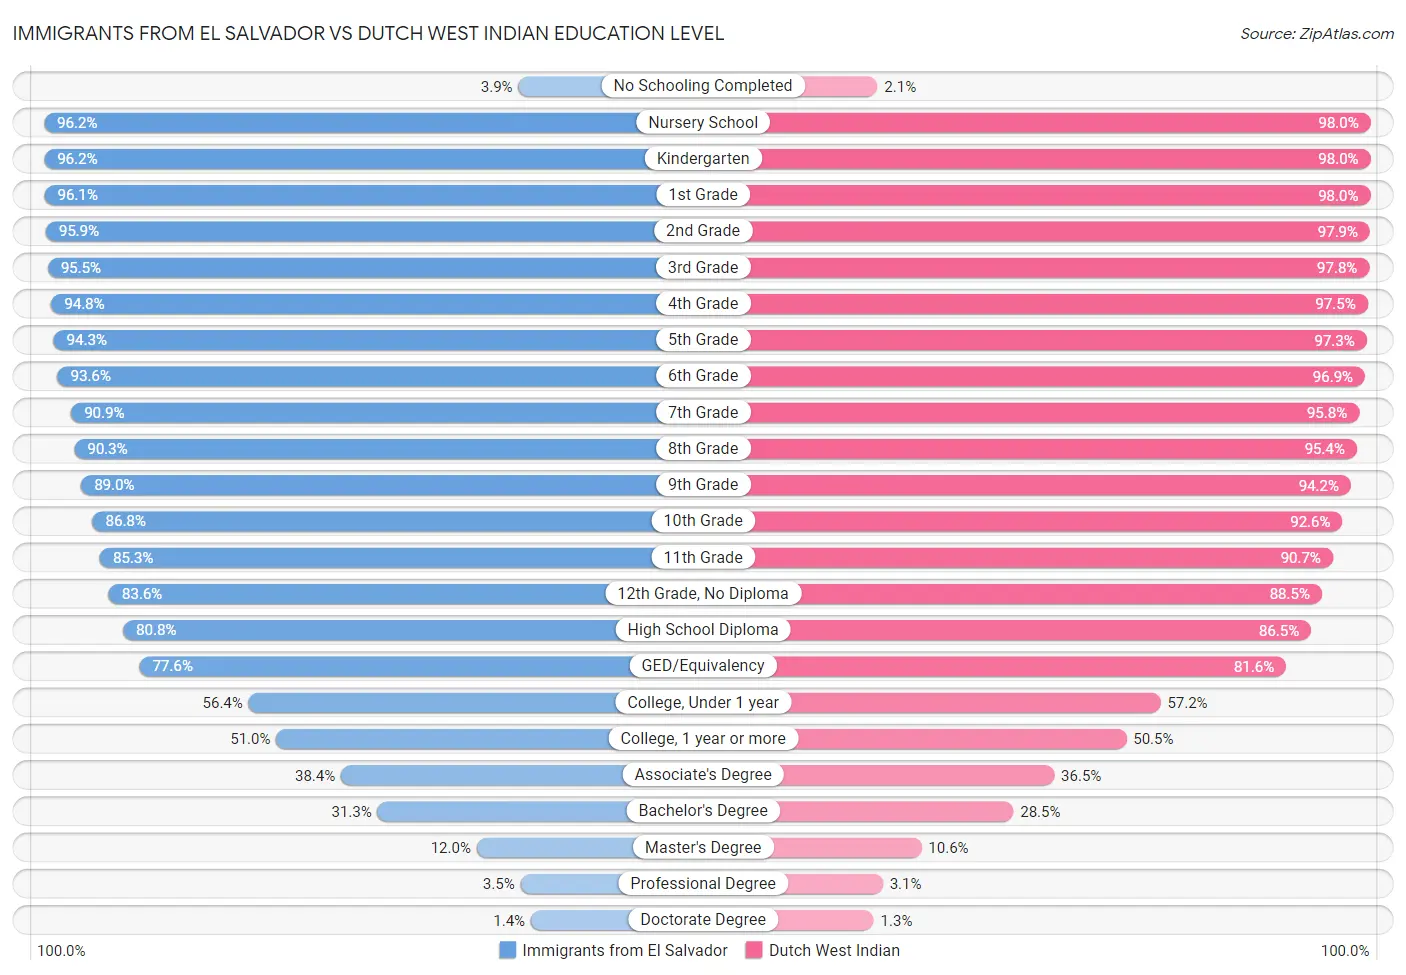 Immigrants from El Salvador vs Dutch West Indian Education Level